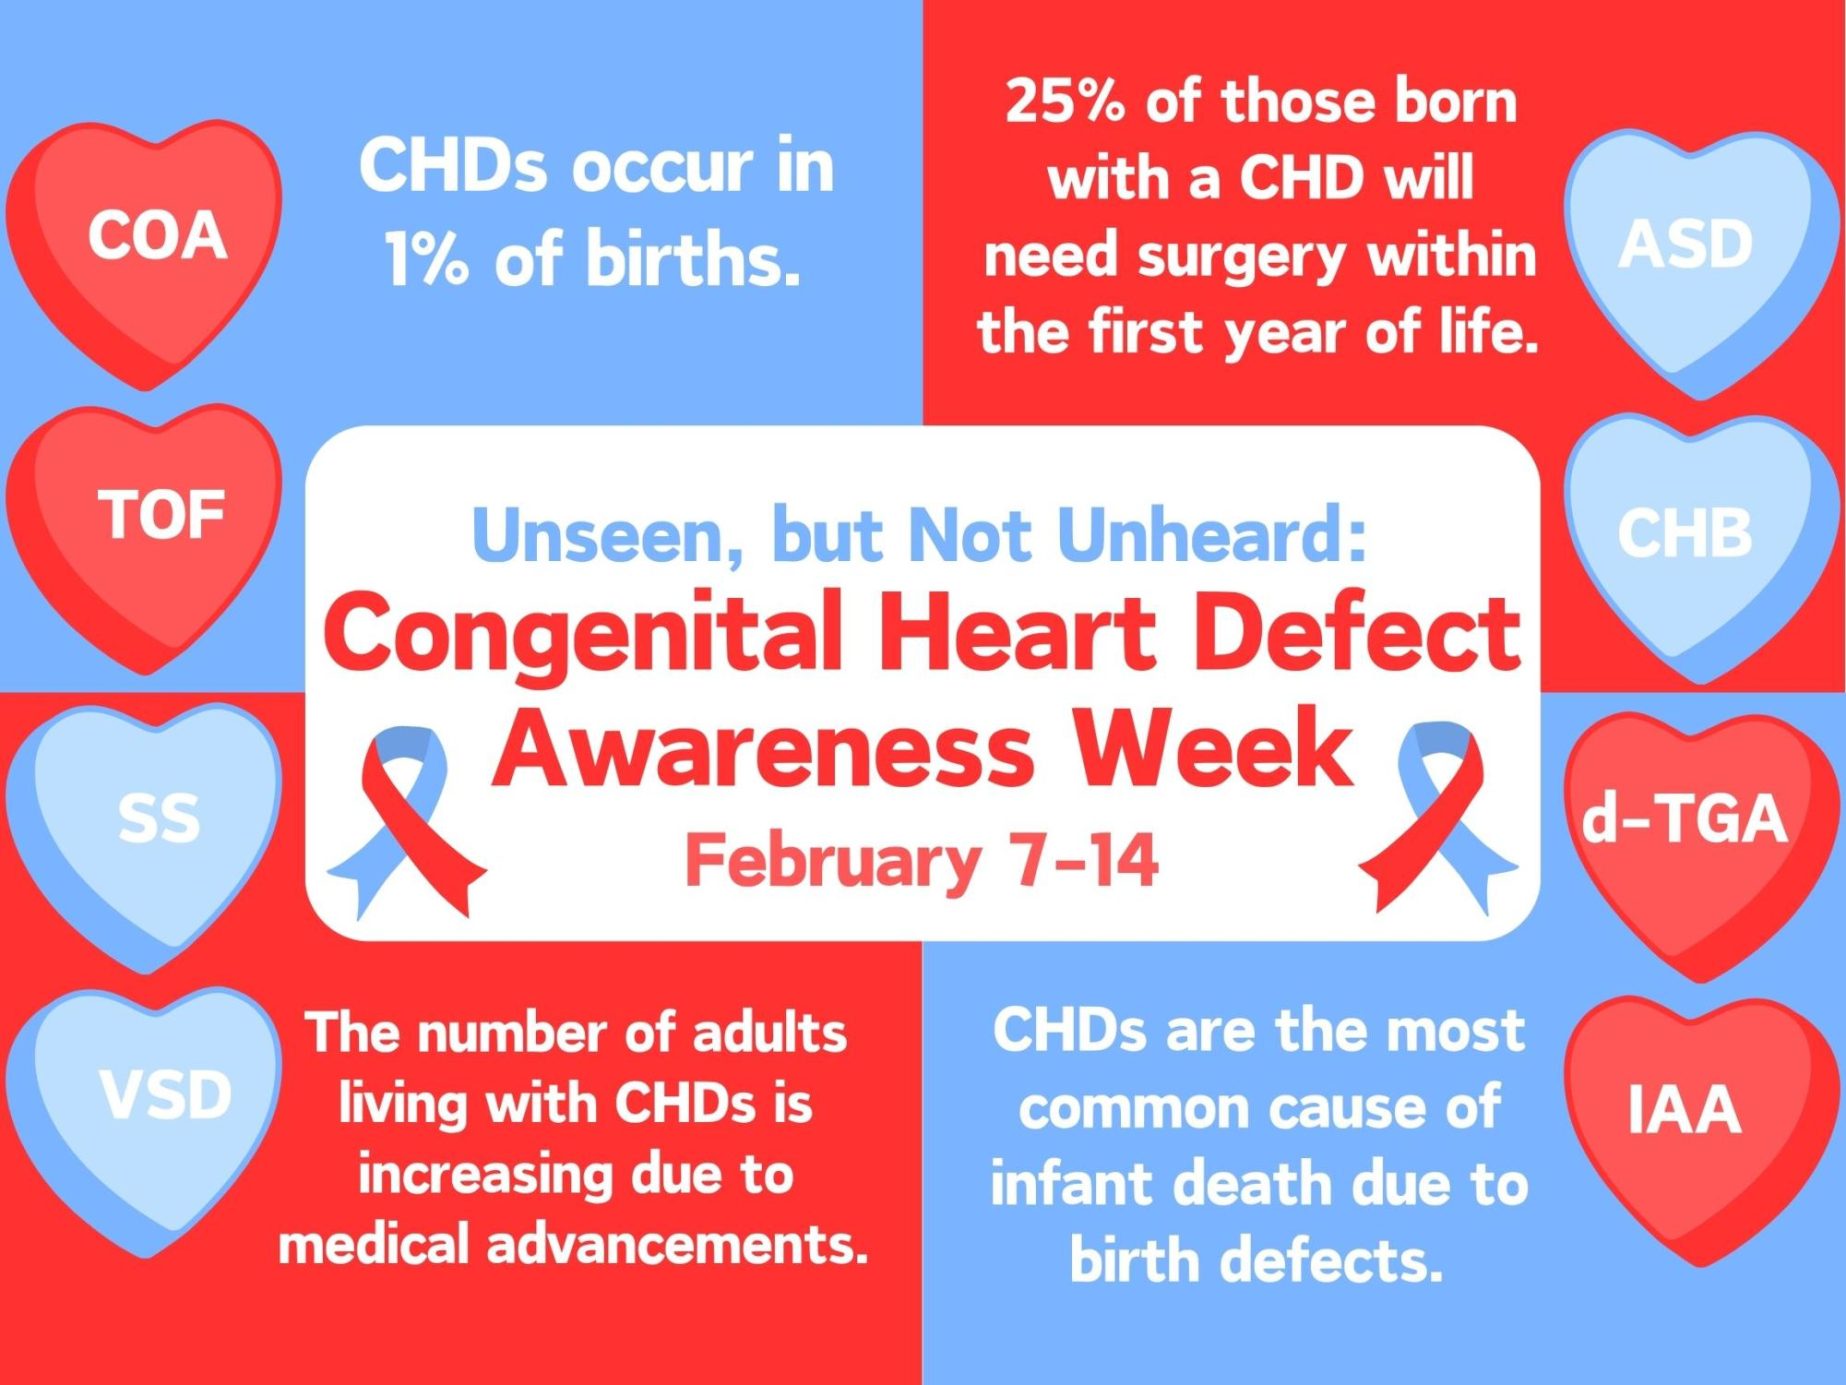 Unseen, but Not Unheard: Congenital Heart Defect Awareness Week